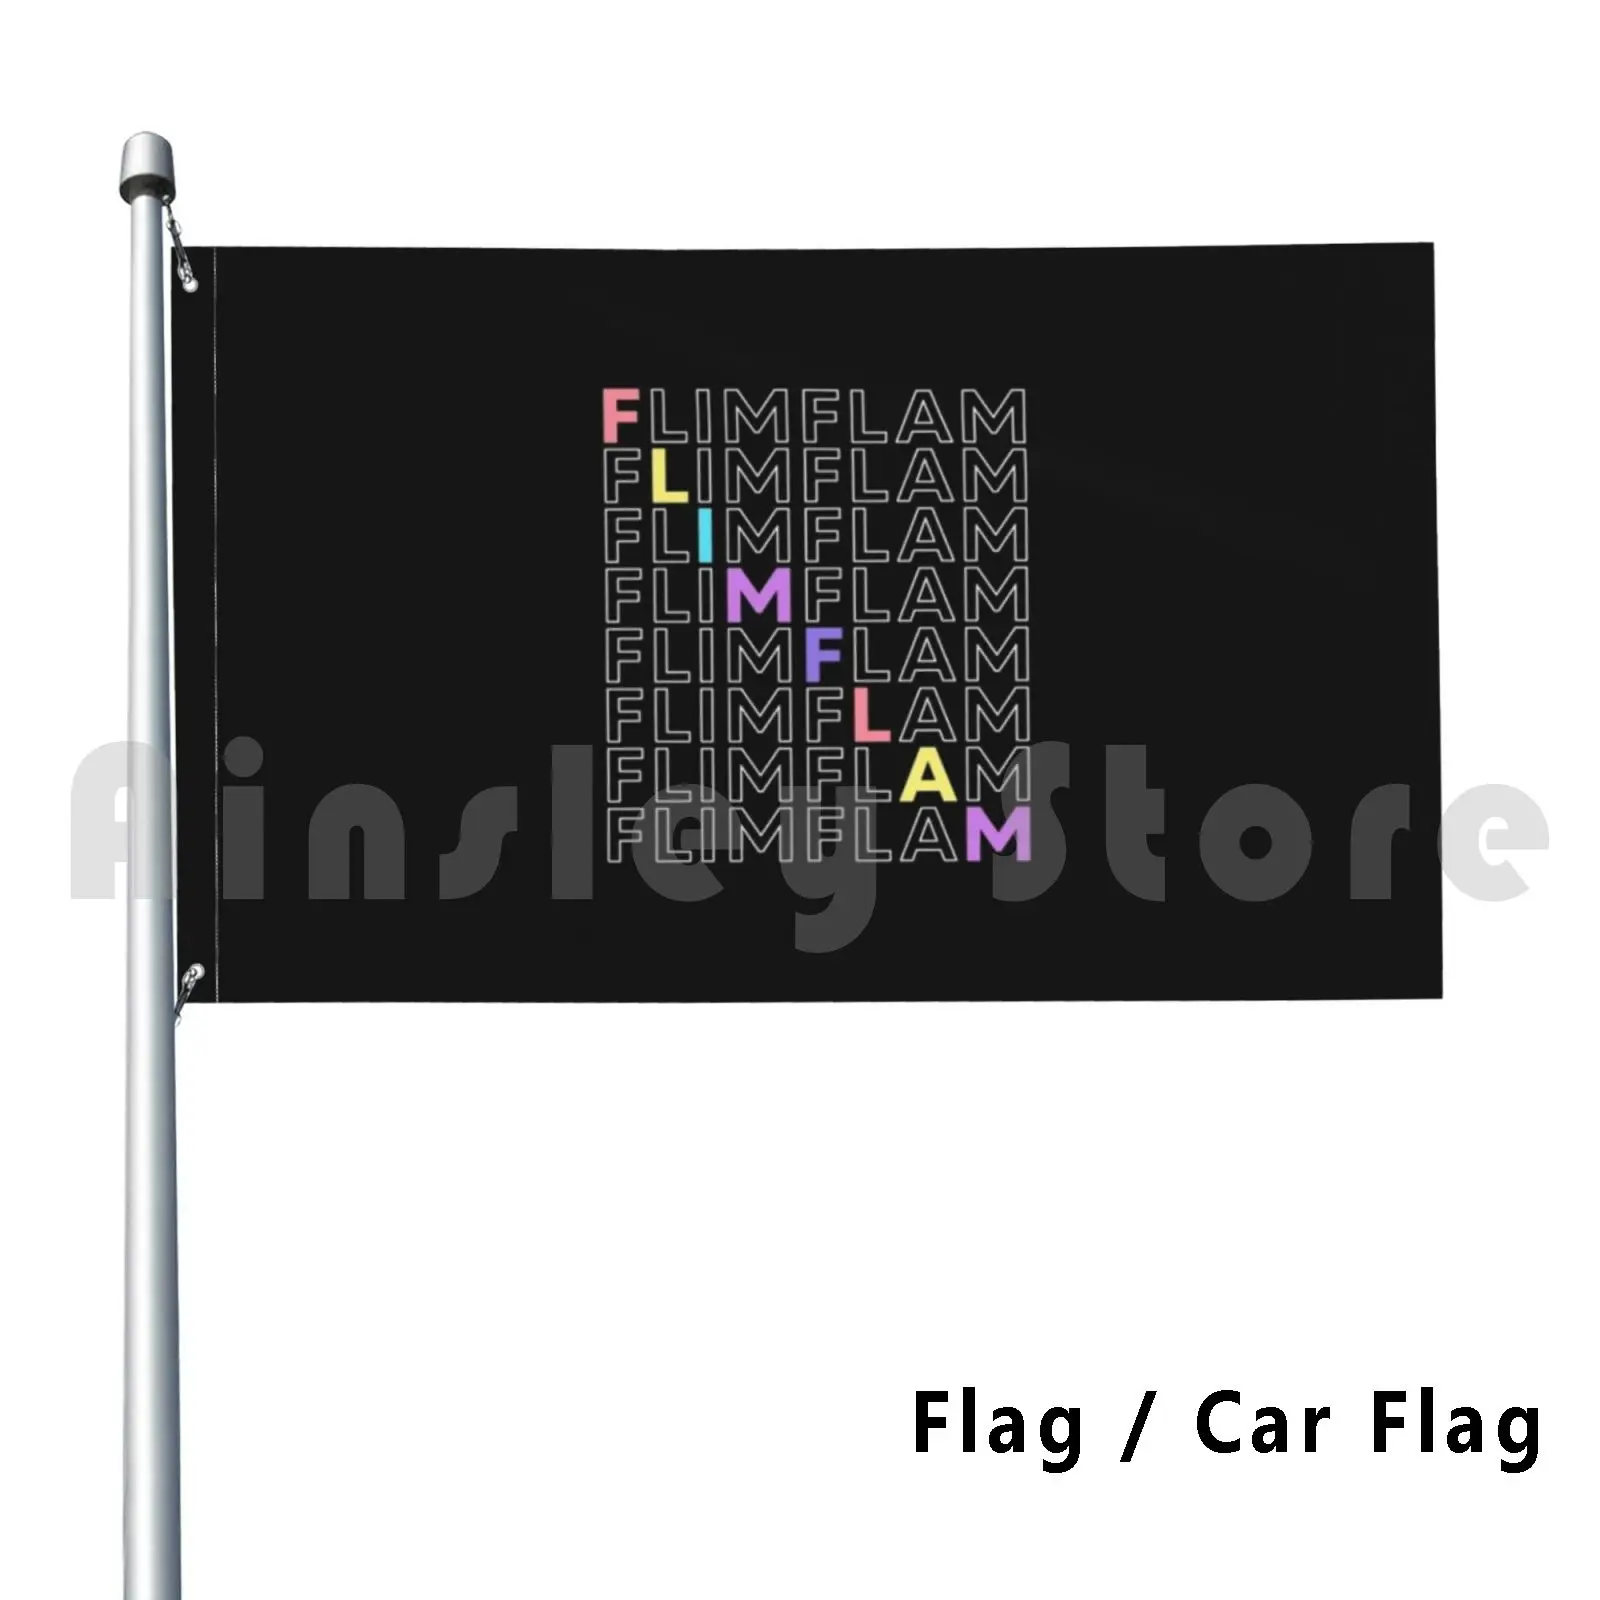 Flim Flam Repeat Colorful Flag Car Flag Funny Flim Flam Merch Flim Flam Flim Flam Typography Popular